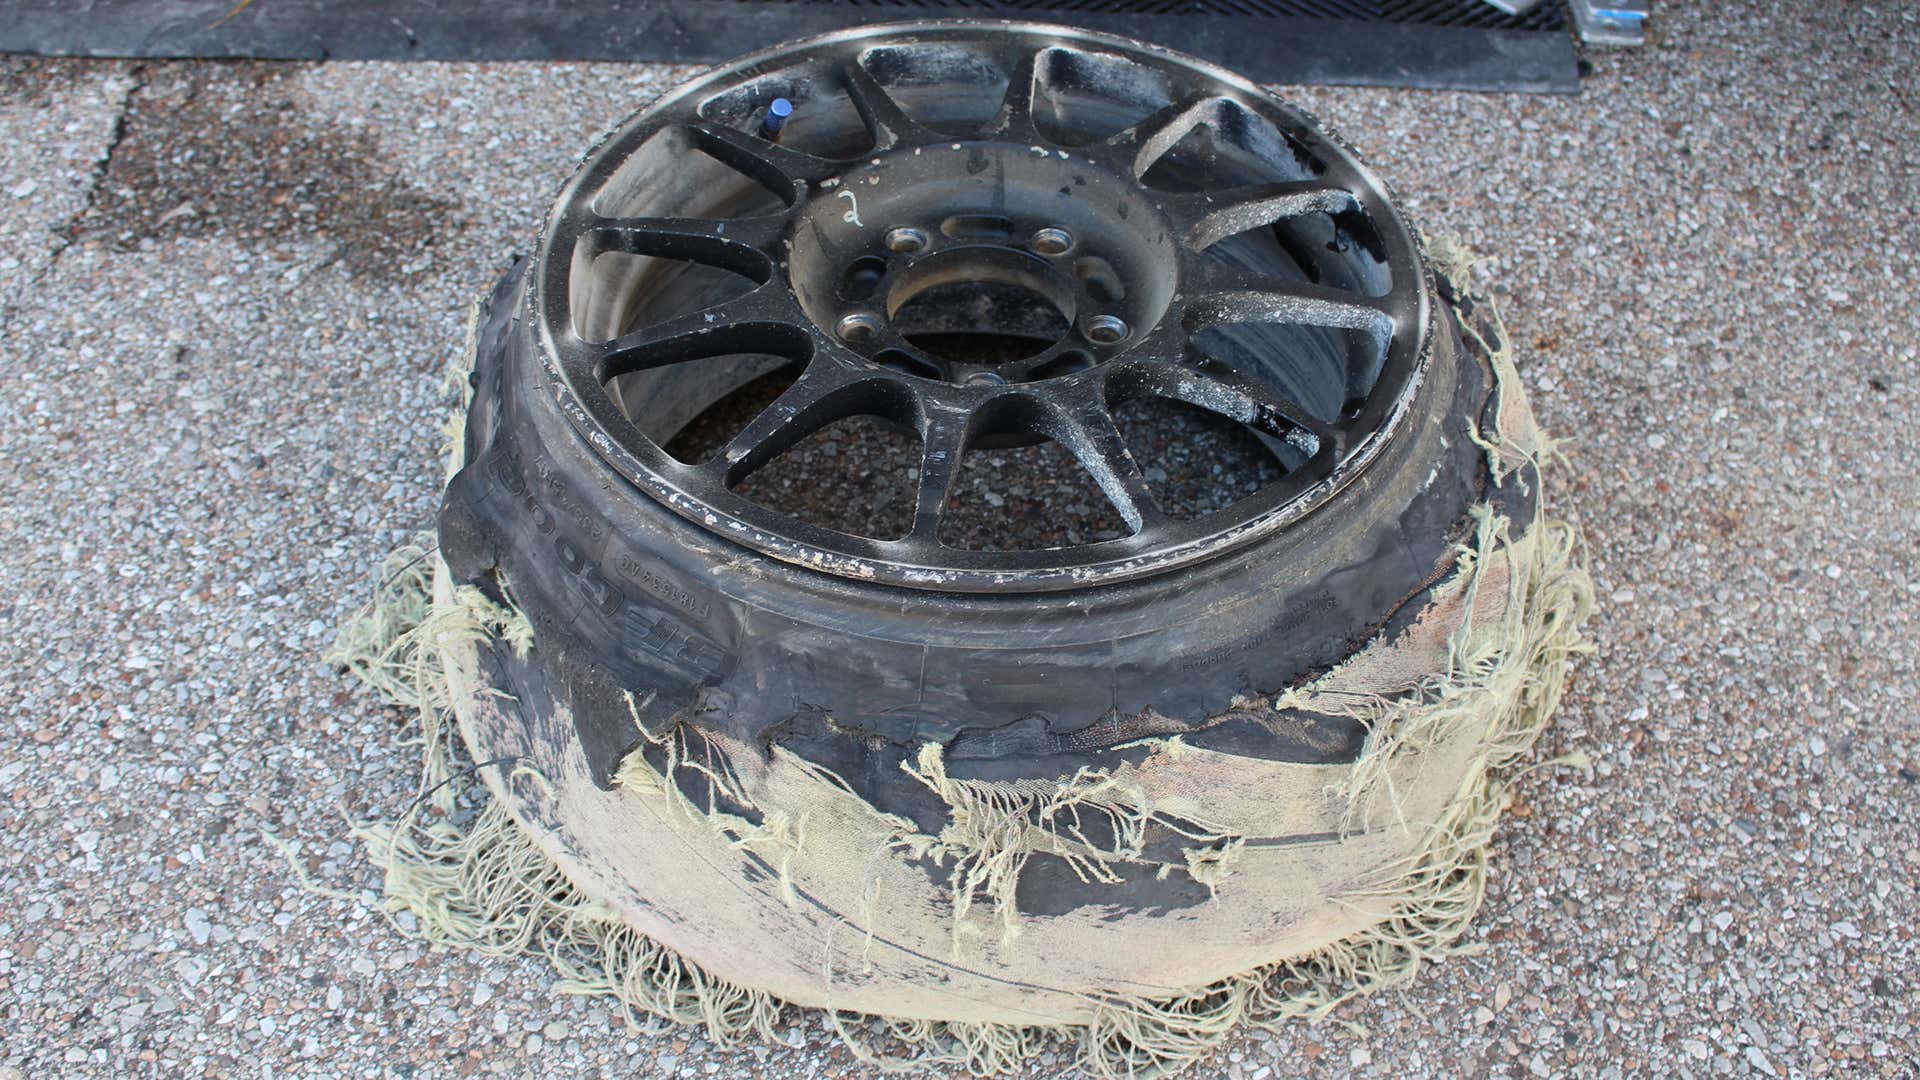 赛车轮子上的碎轮胎。